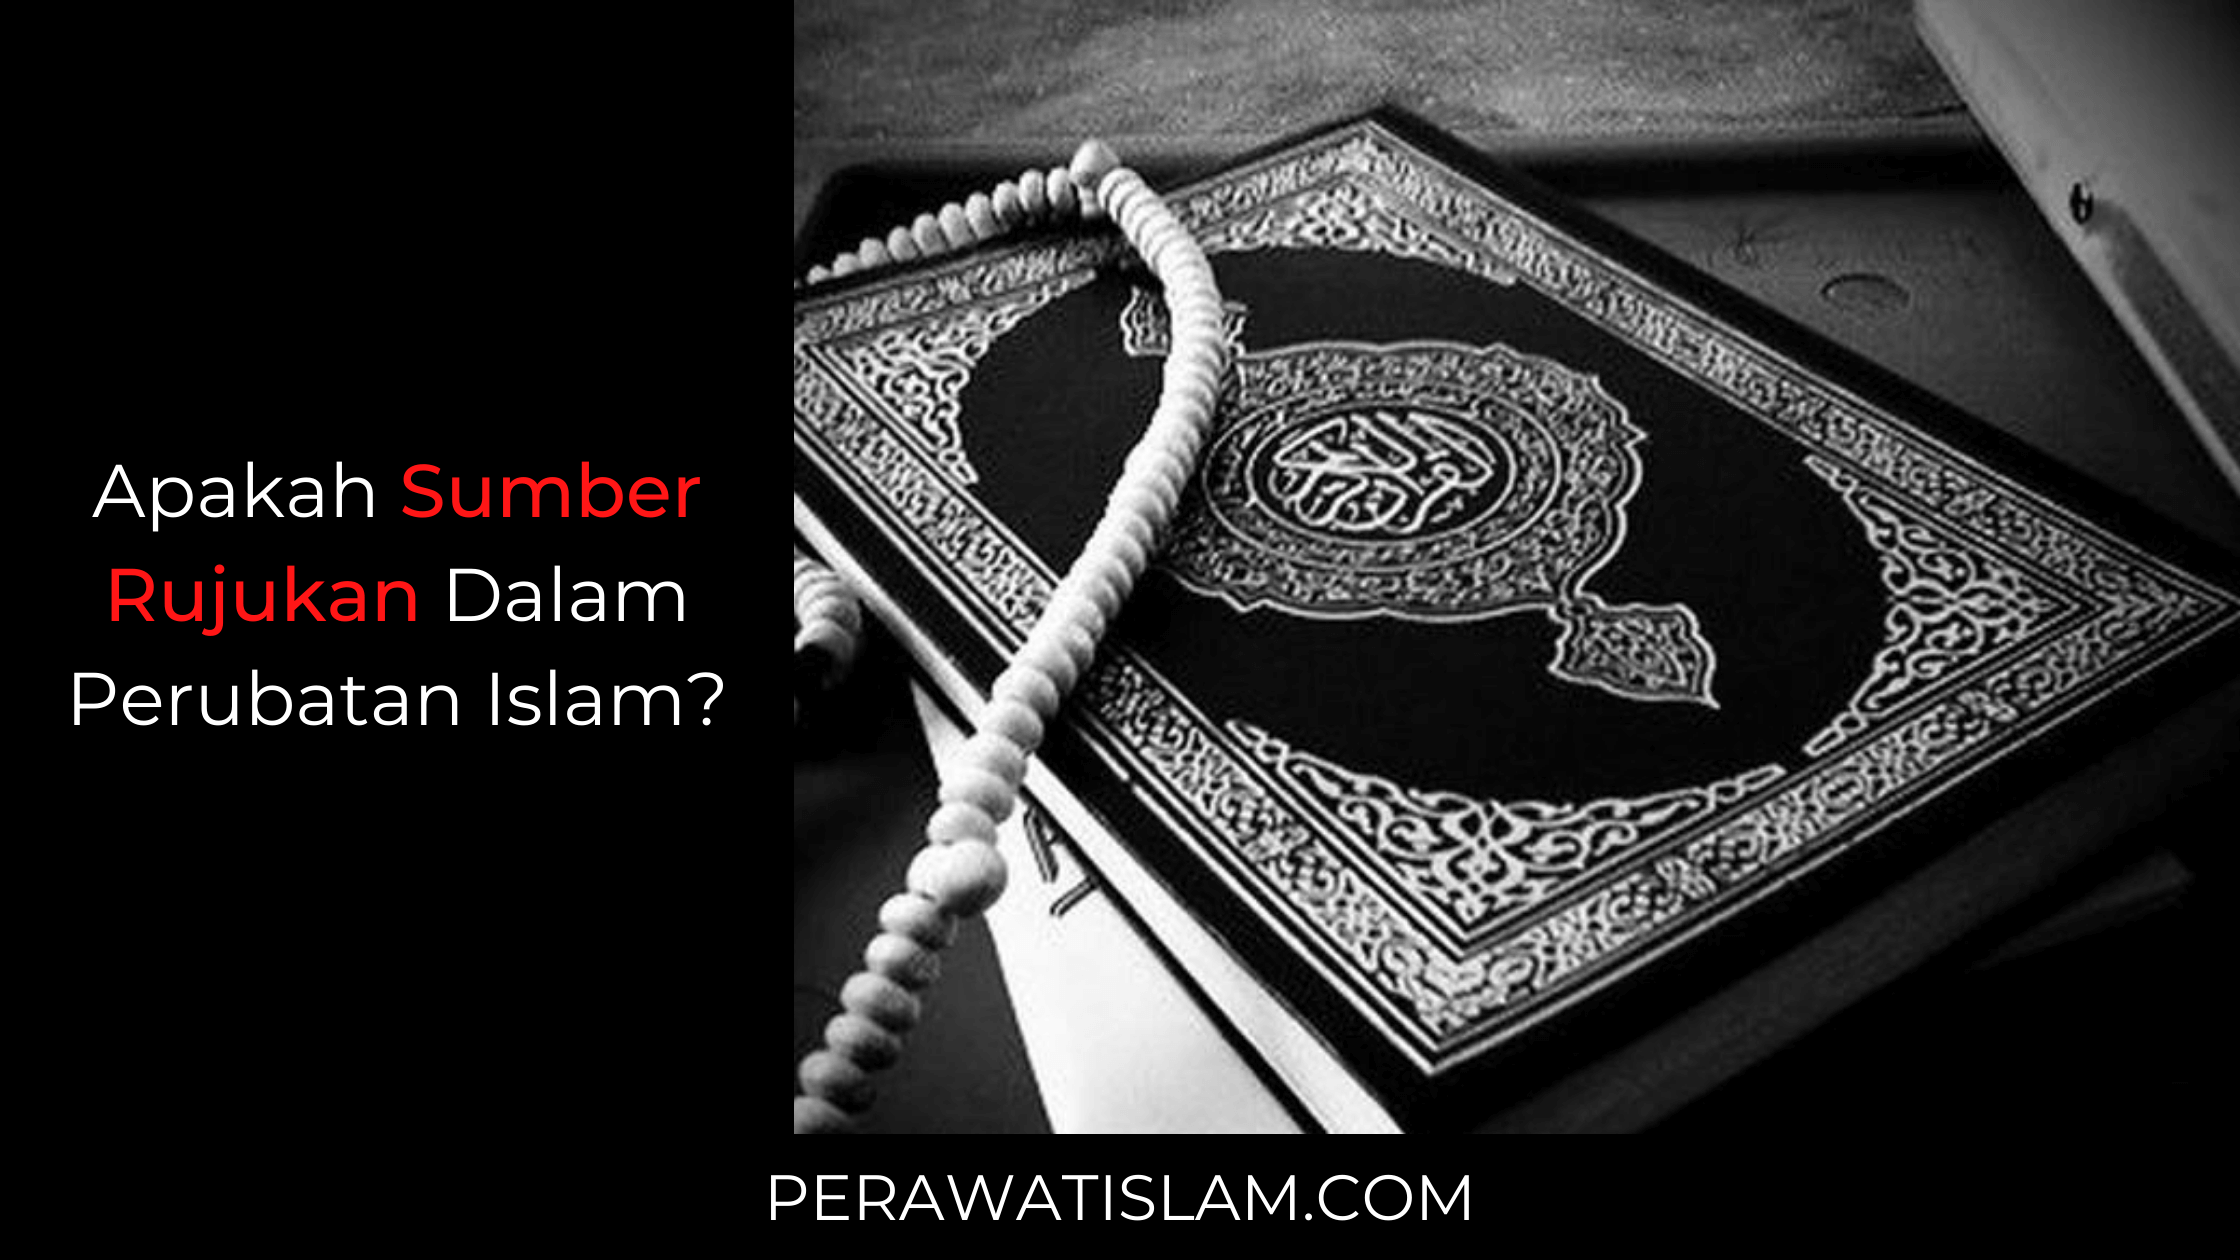 Apakah Sumber Rujukan Perubatan Islam?